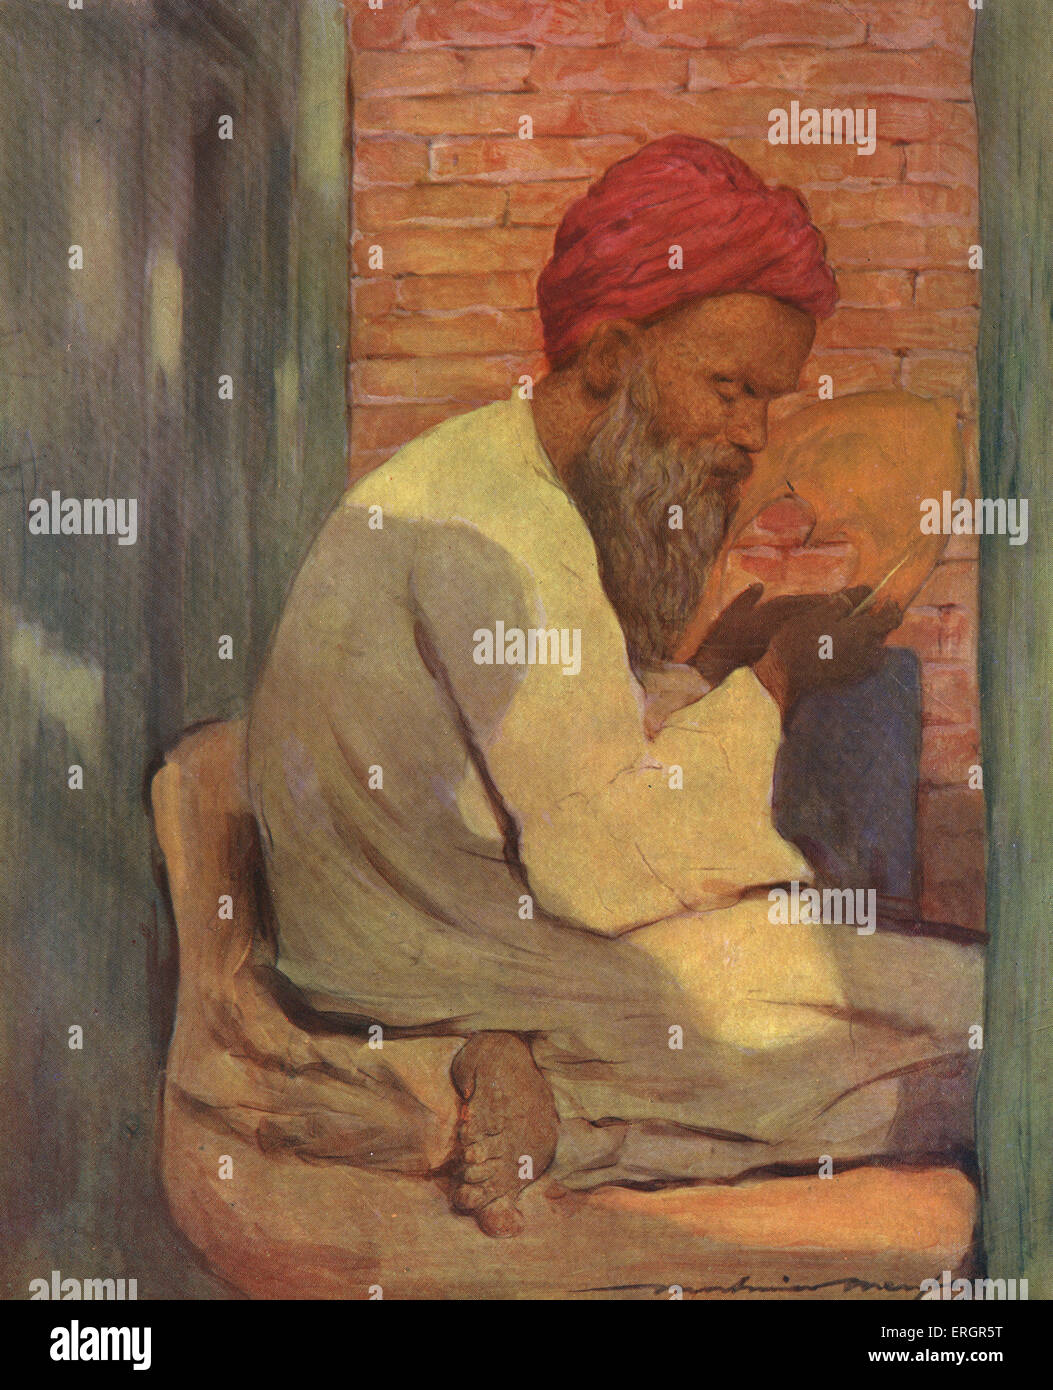 Un Indien slipper-bouilloire au travail, 19e siècle. (L'artiste australien Mortimer Menpes 1855 - 1938) Raj britannique. Banque D'Images